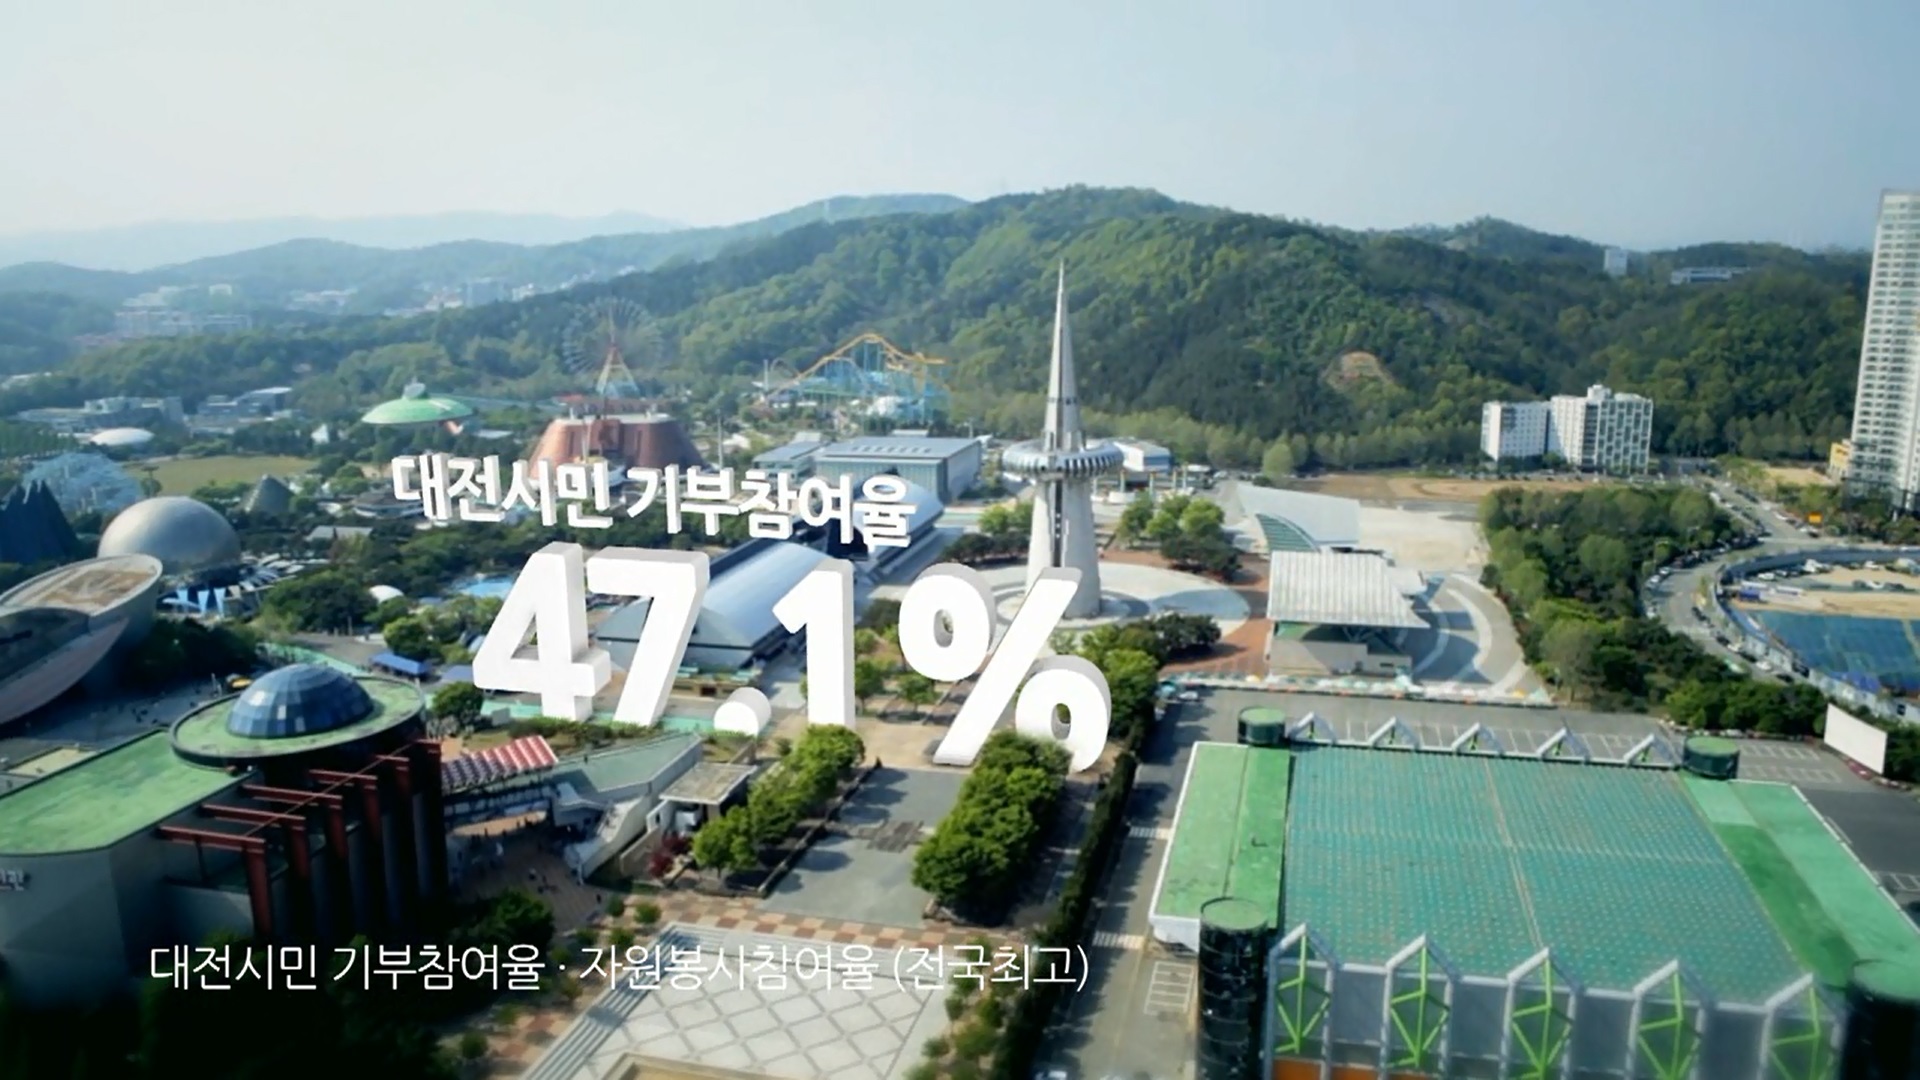 2014년 복지만두레 홍보영상 1탄